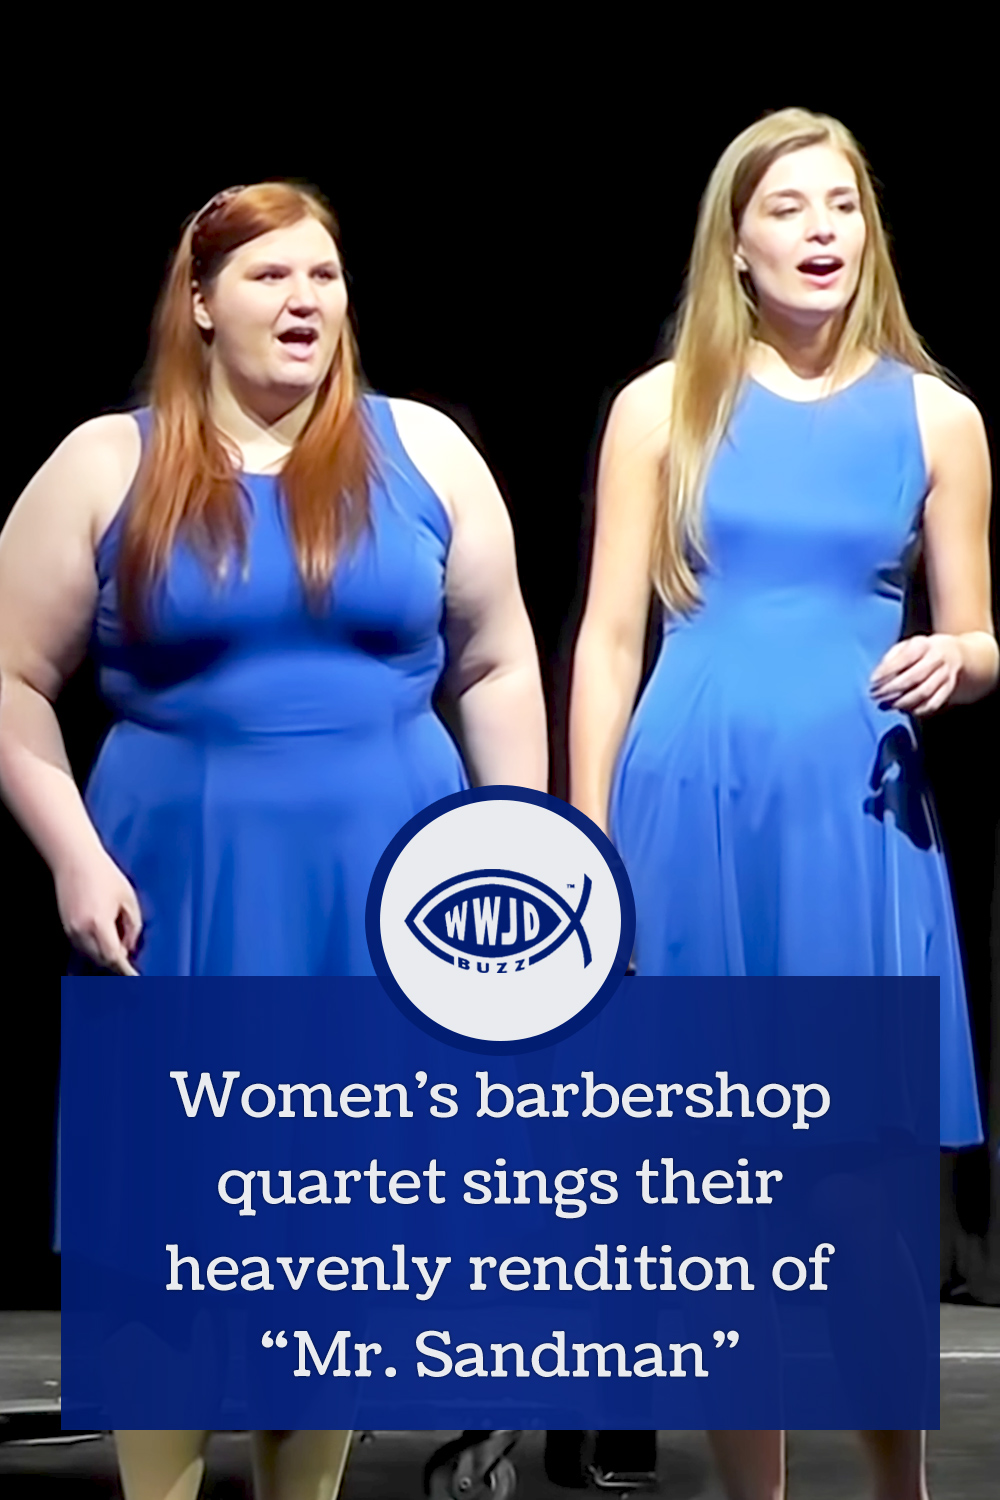 Women\'s barbershop quartet sings their heavenly rendition of “Mr. Sandman”